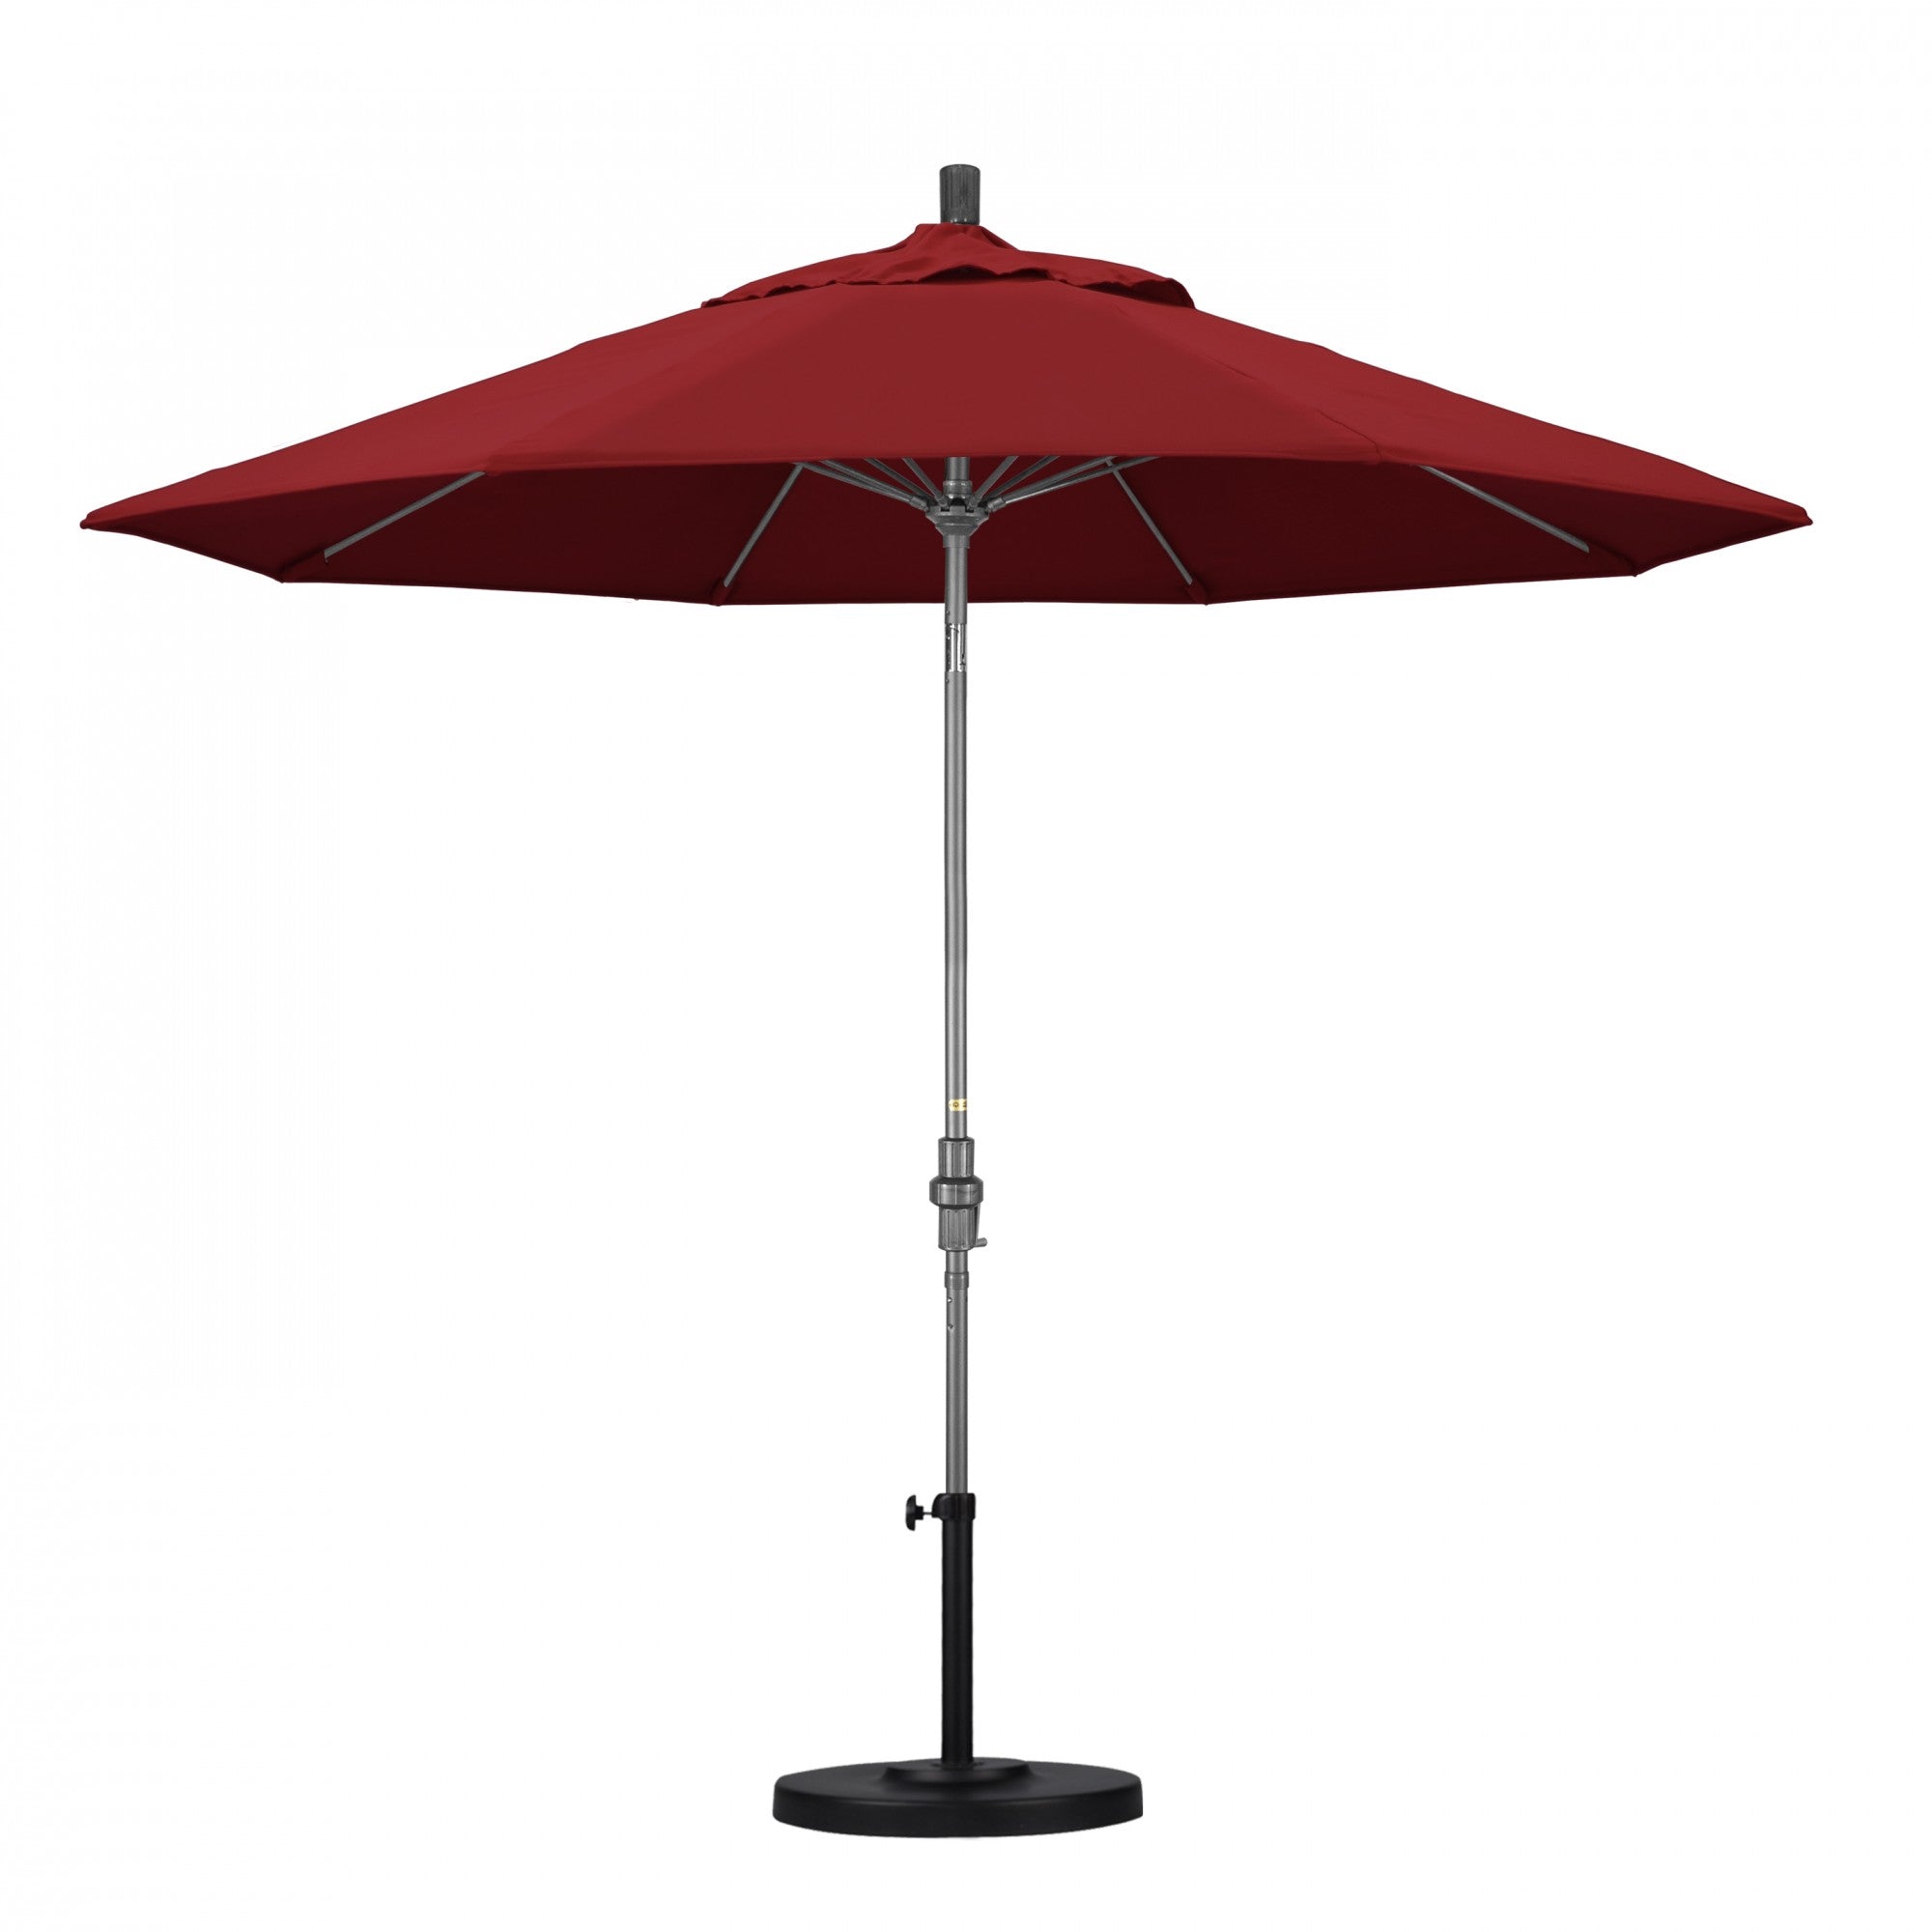 California Umbrella - 9' - Patio Umbrella Umbrella - Aluminum Pole - Red - Olefin - GSCUF908010-F13